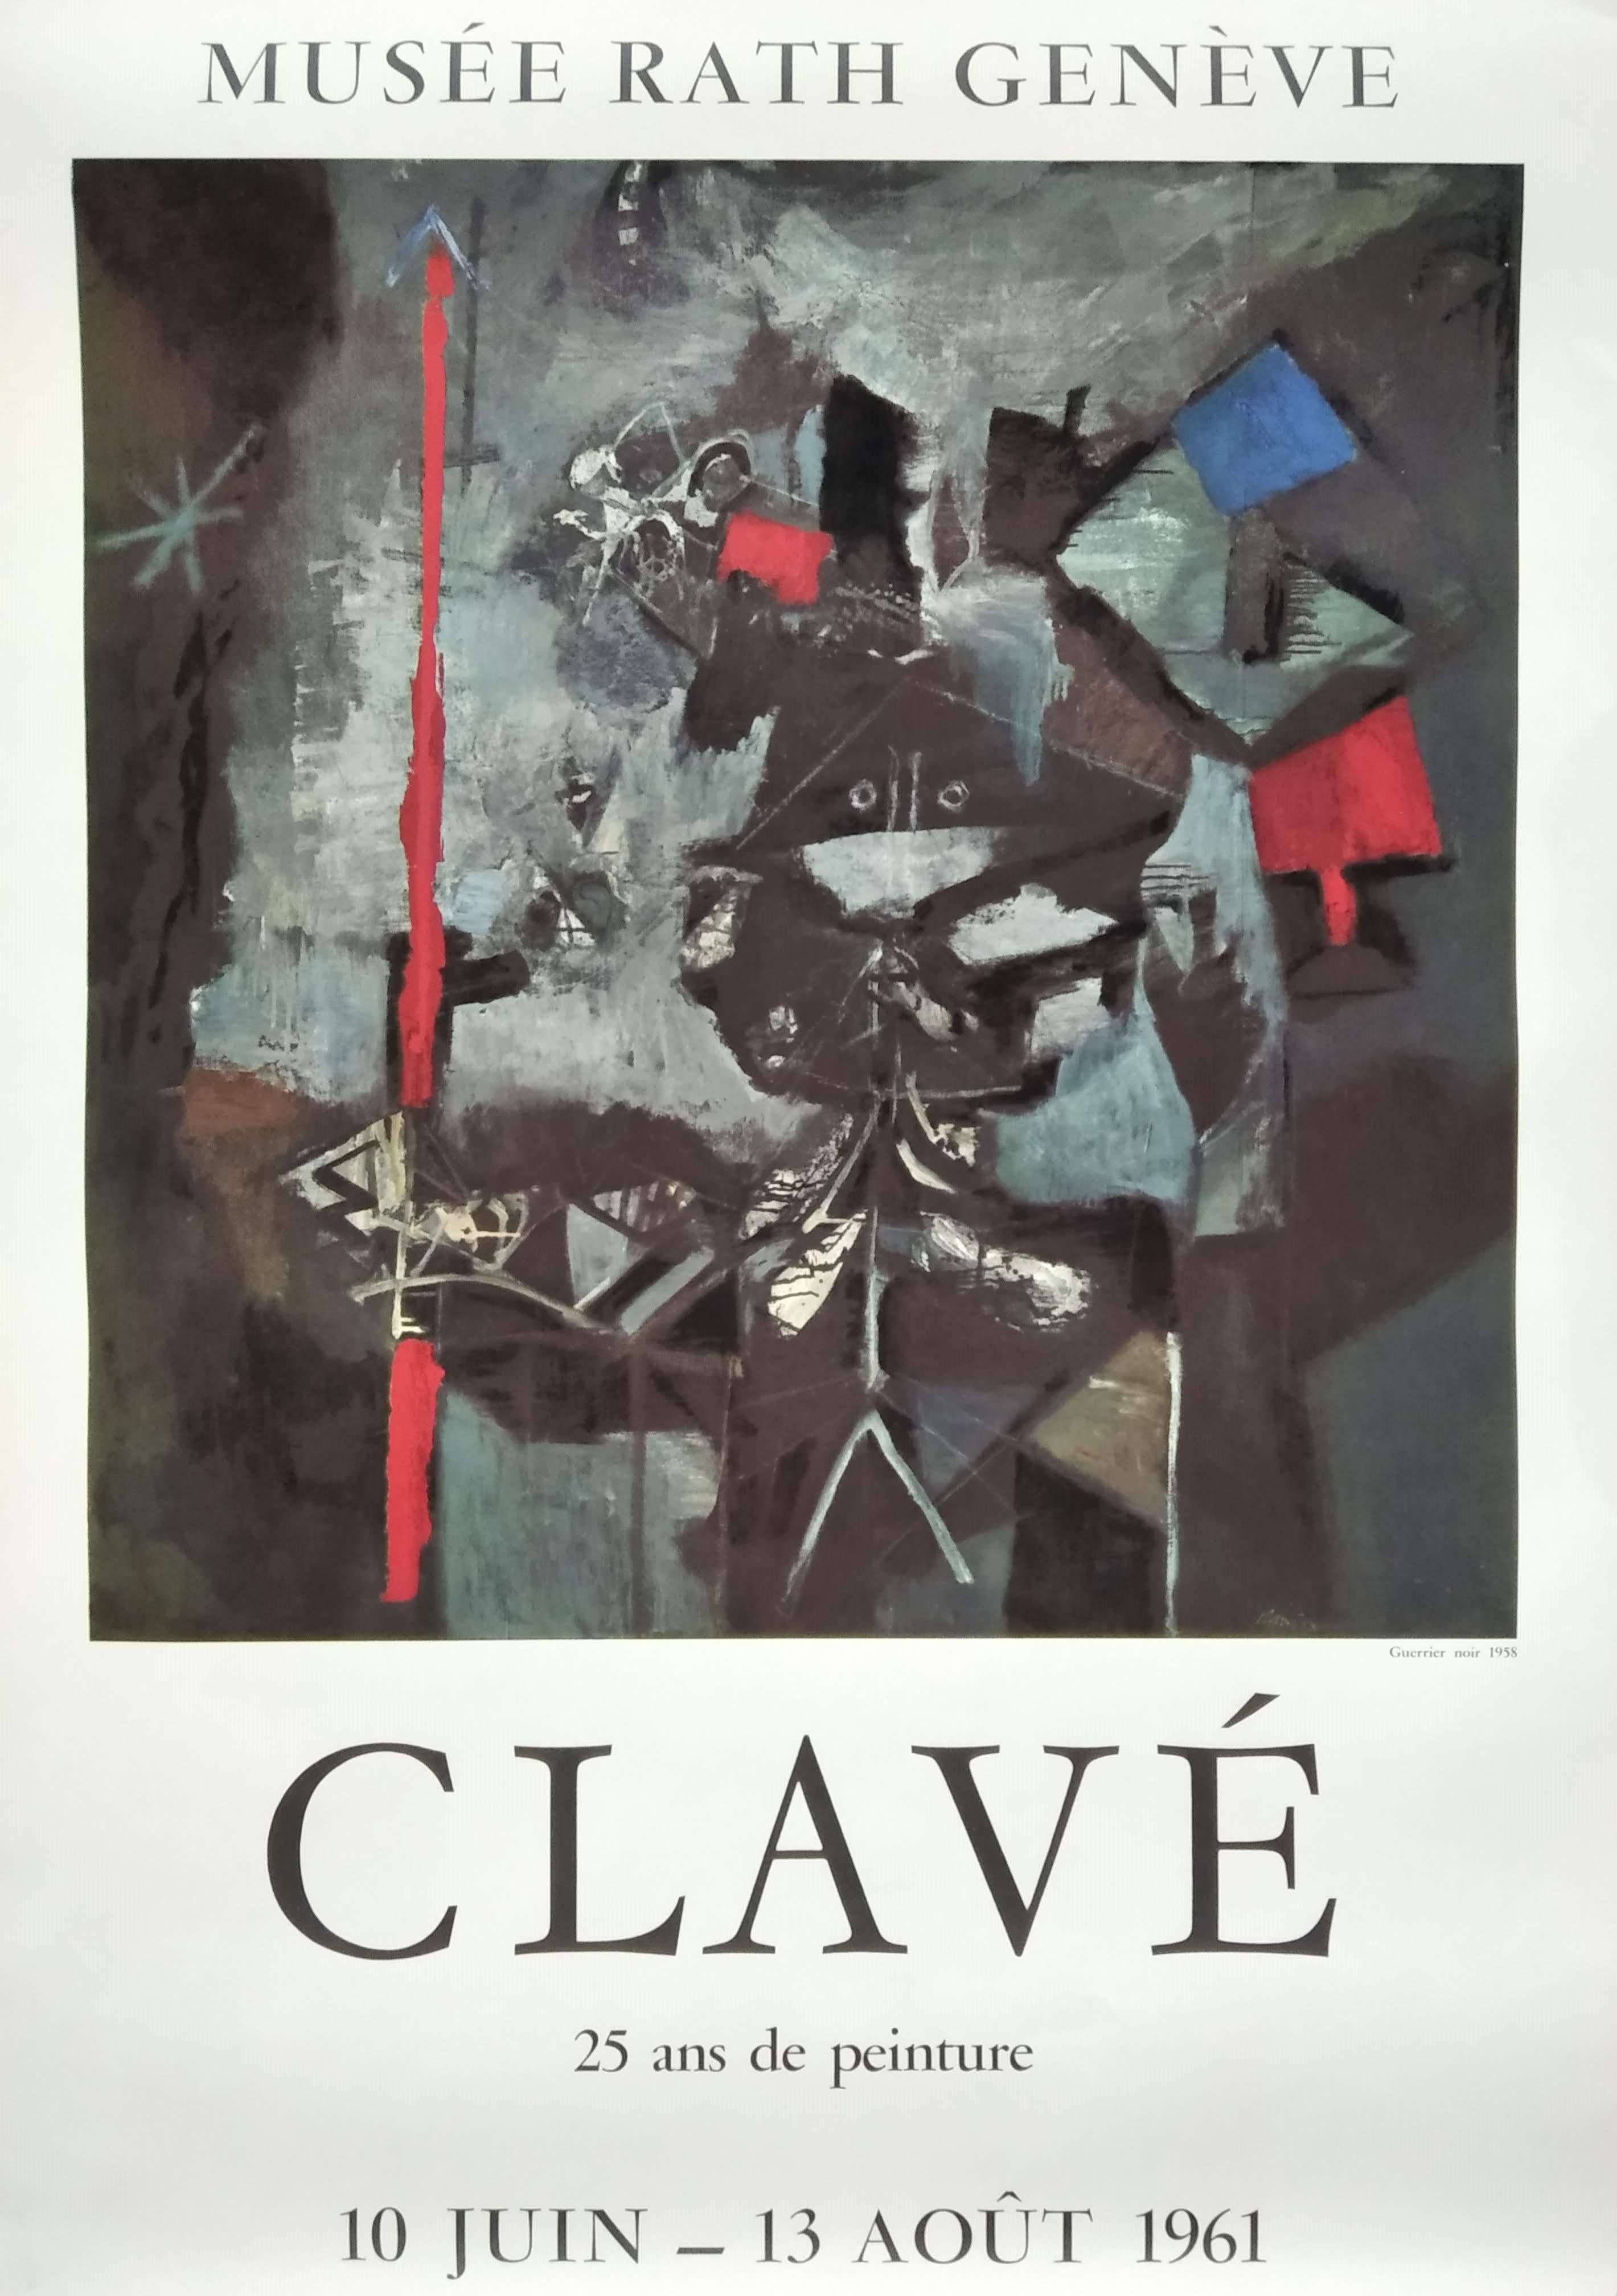 Abstract Print Antoni Clavé - Musée Rath Genève. CLAVÉ : 25 ans de peinture. 10 juin - 13 août 1961